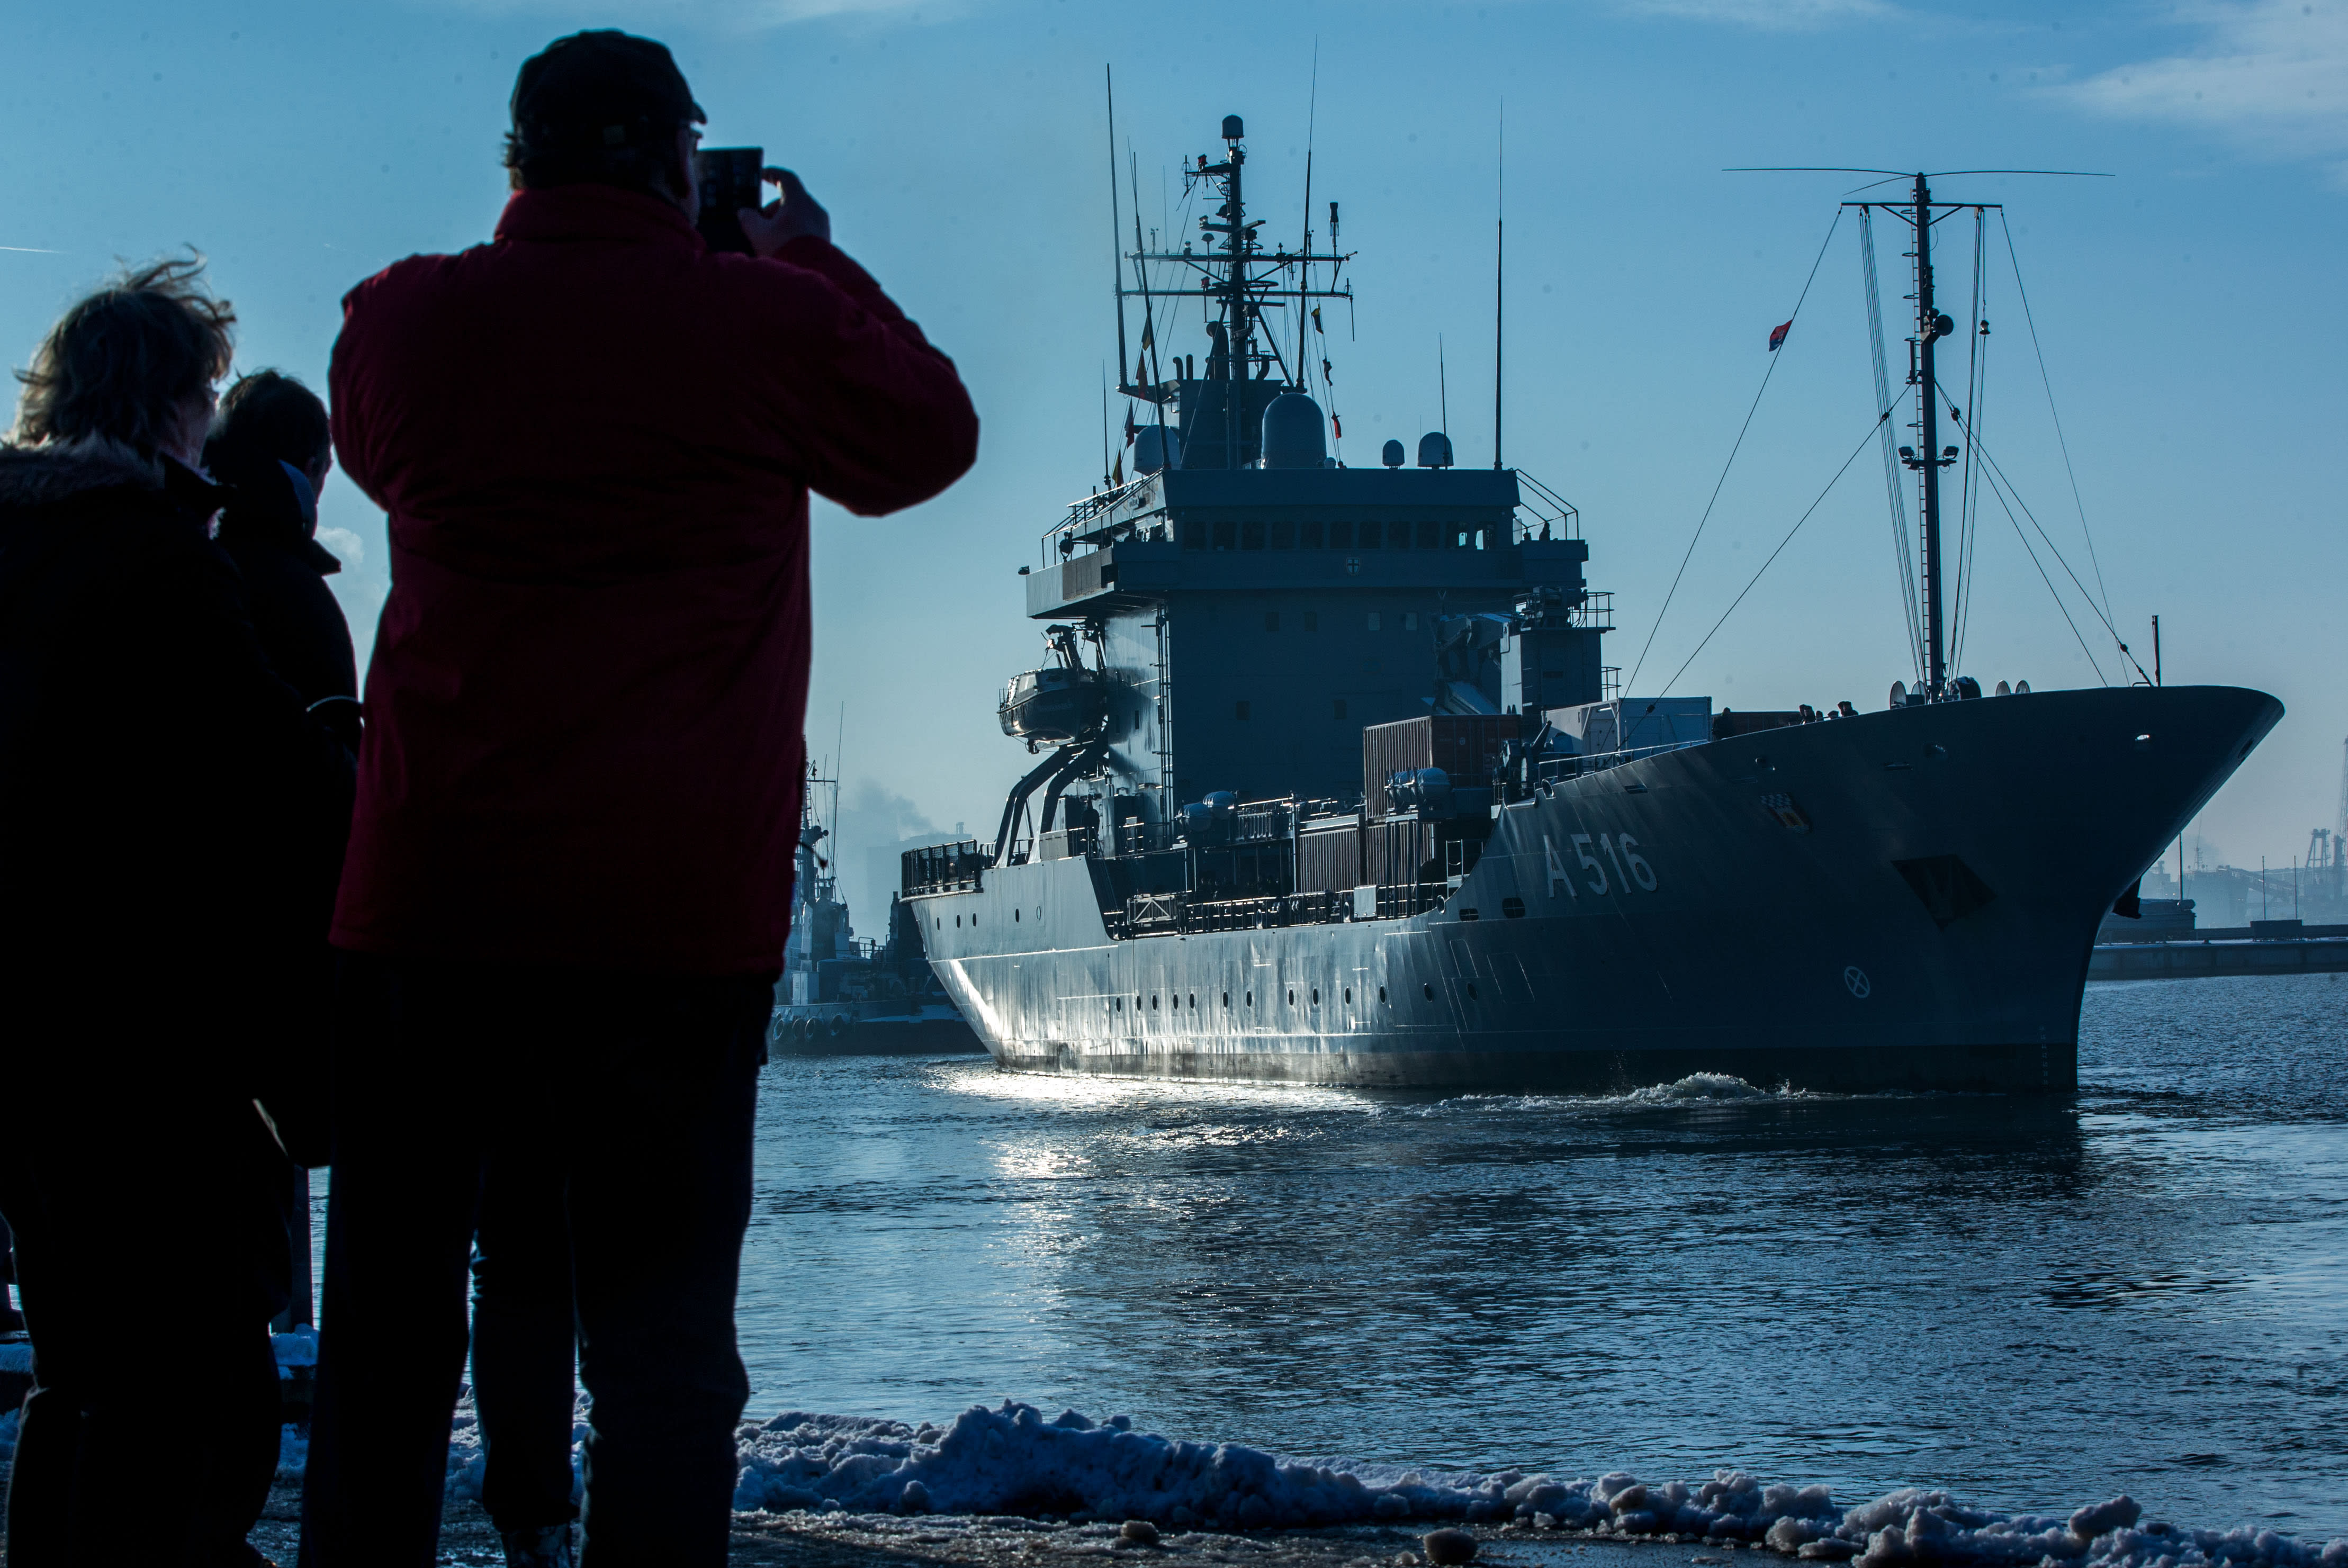 تبدأ روسيا مناورة بحرية في بحر البلطيق بعد يوم من بدء مناورات الناتو